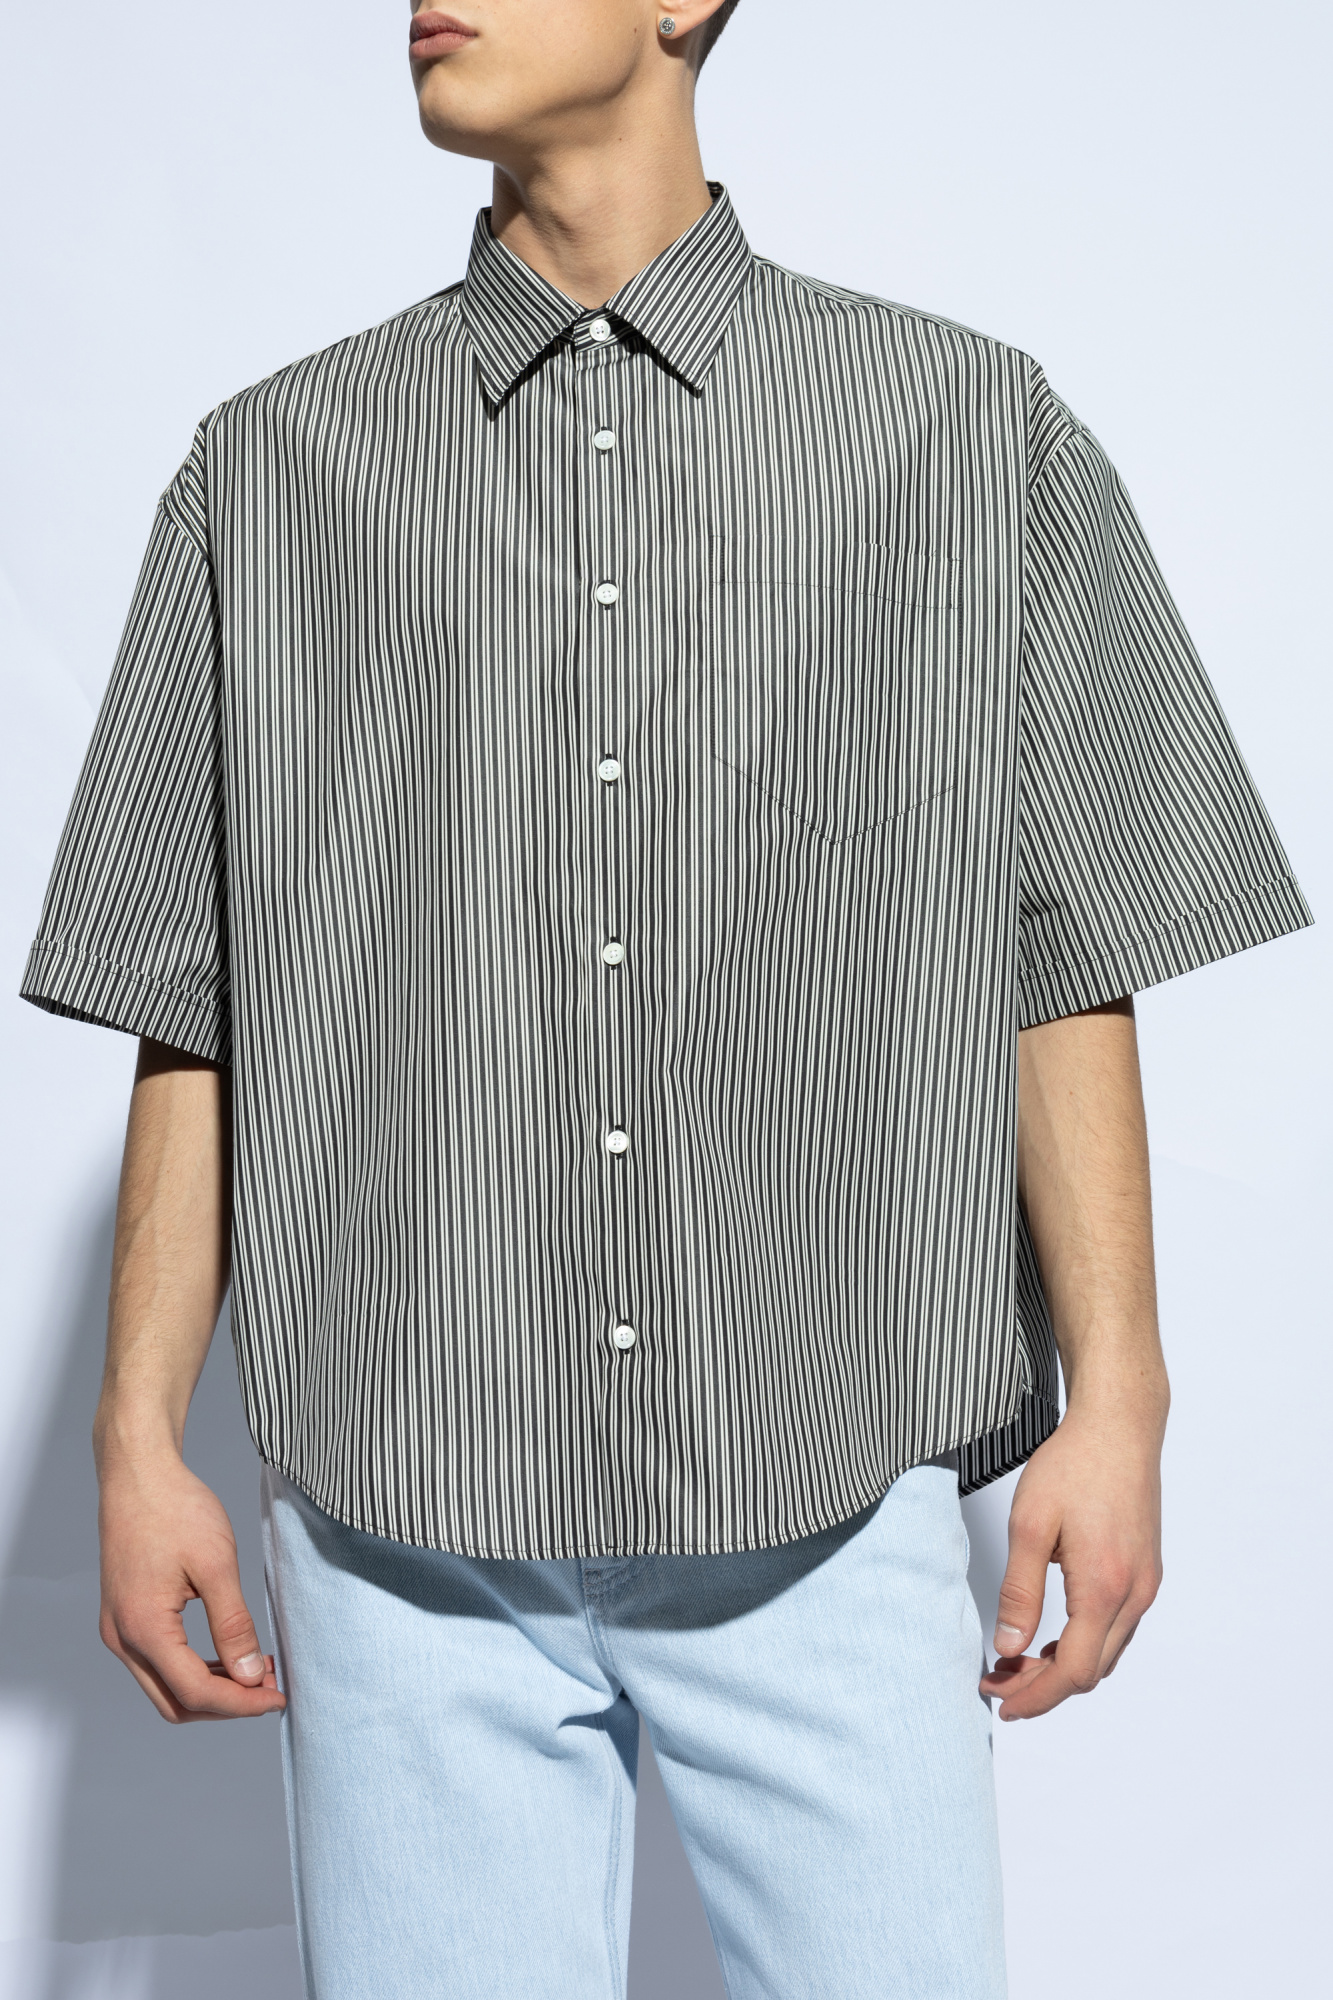 Essential monogram polo t-shirt shirt Striped pattern t-shirt shirt